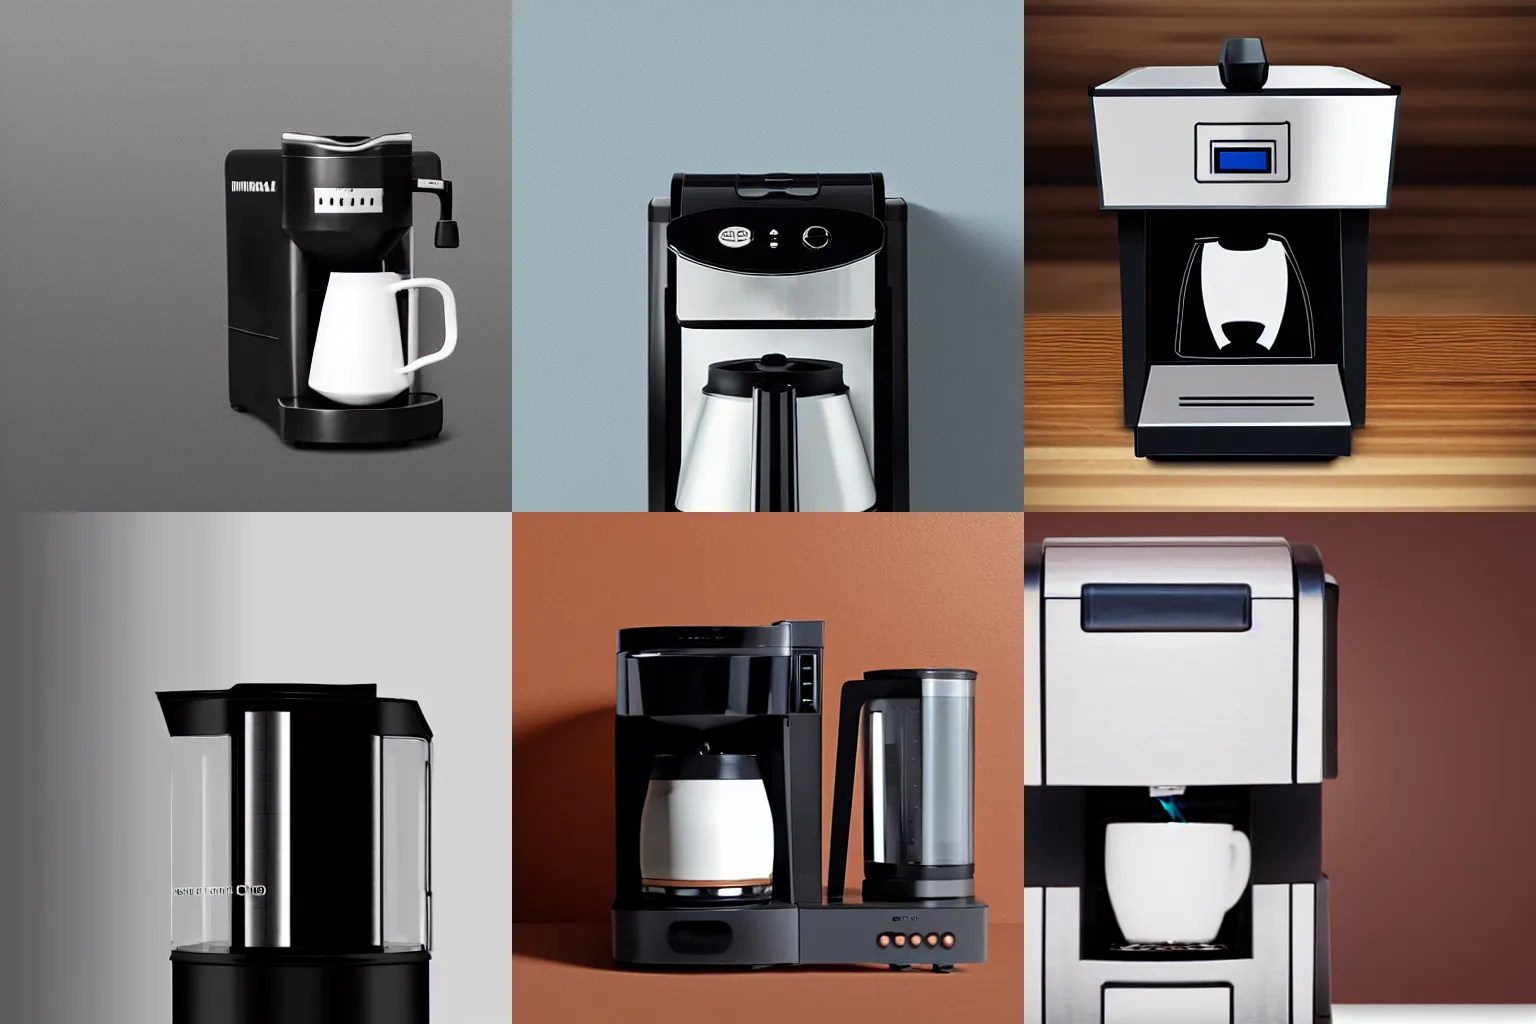 ArtStation - KitchenAid Coffee Collection ( Espresso Machine and Grinder )